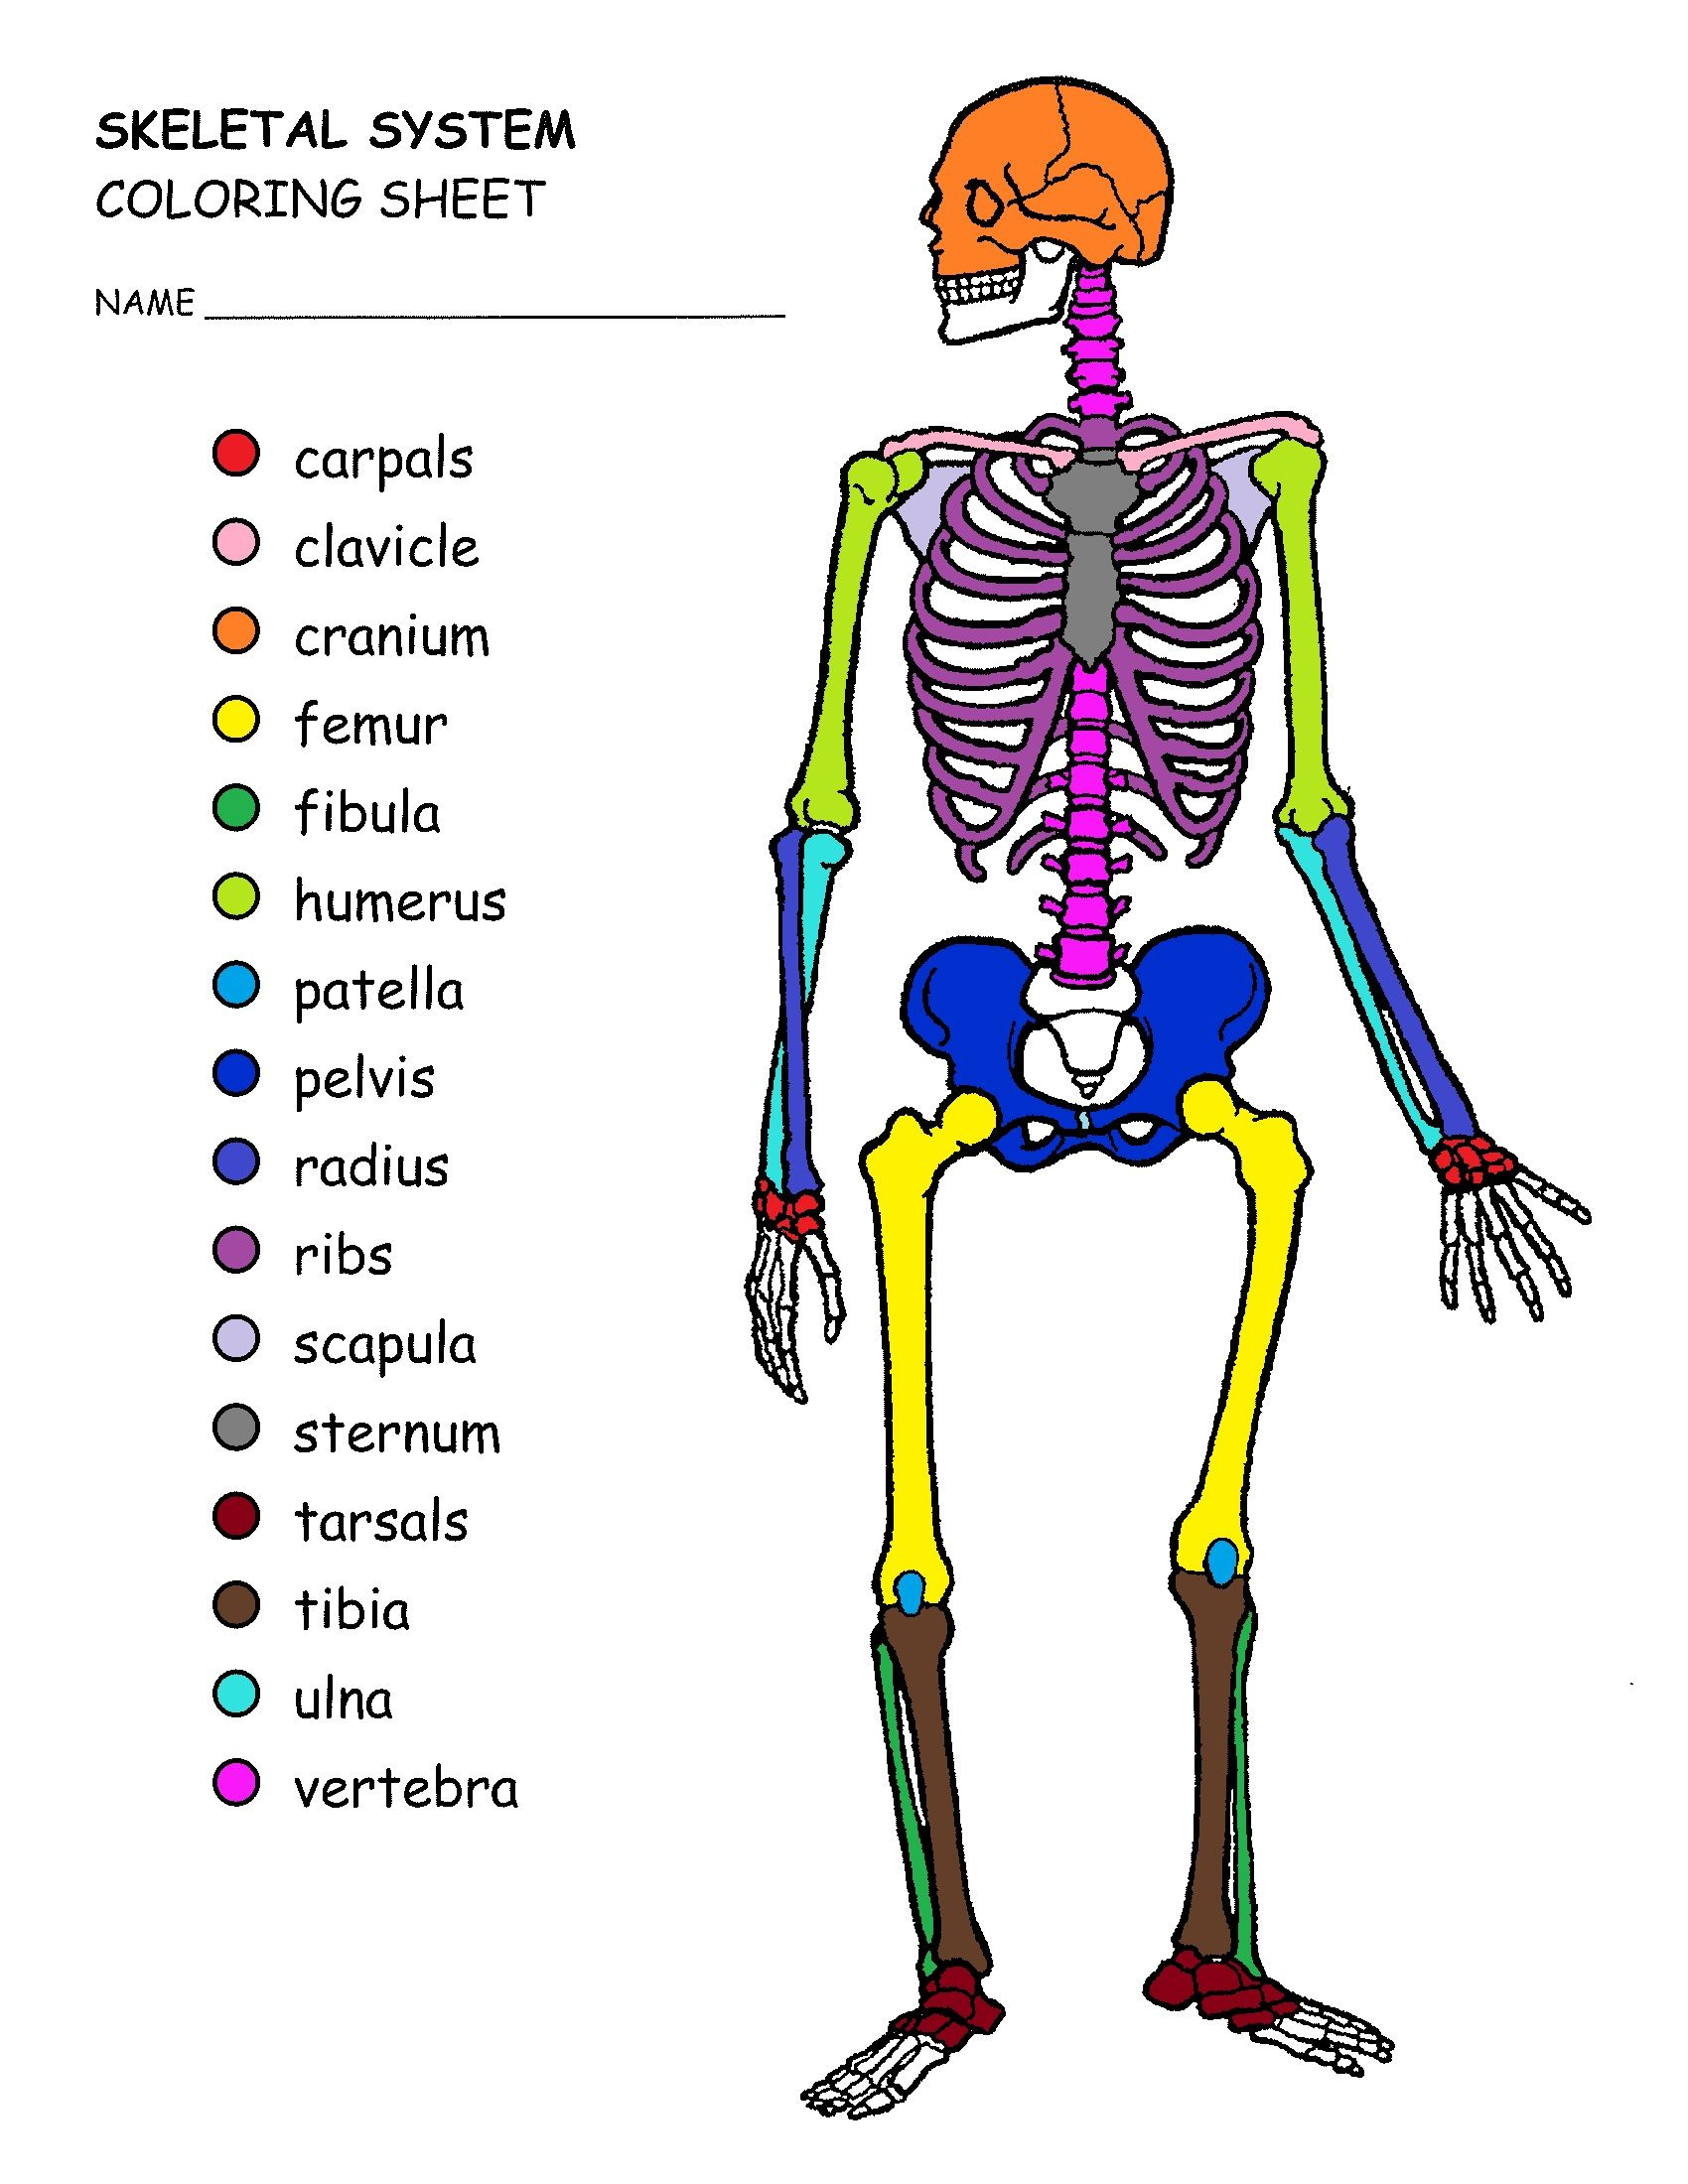 New Skeletal System Coloring Book Skeleton Drawings Printable 